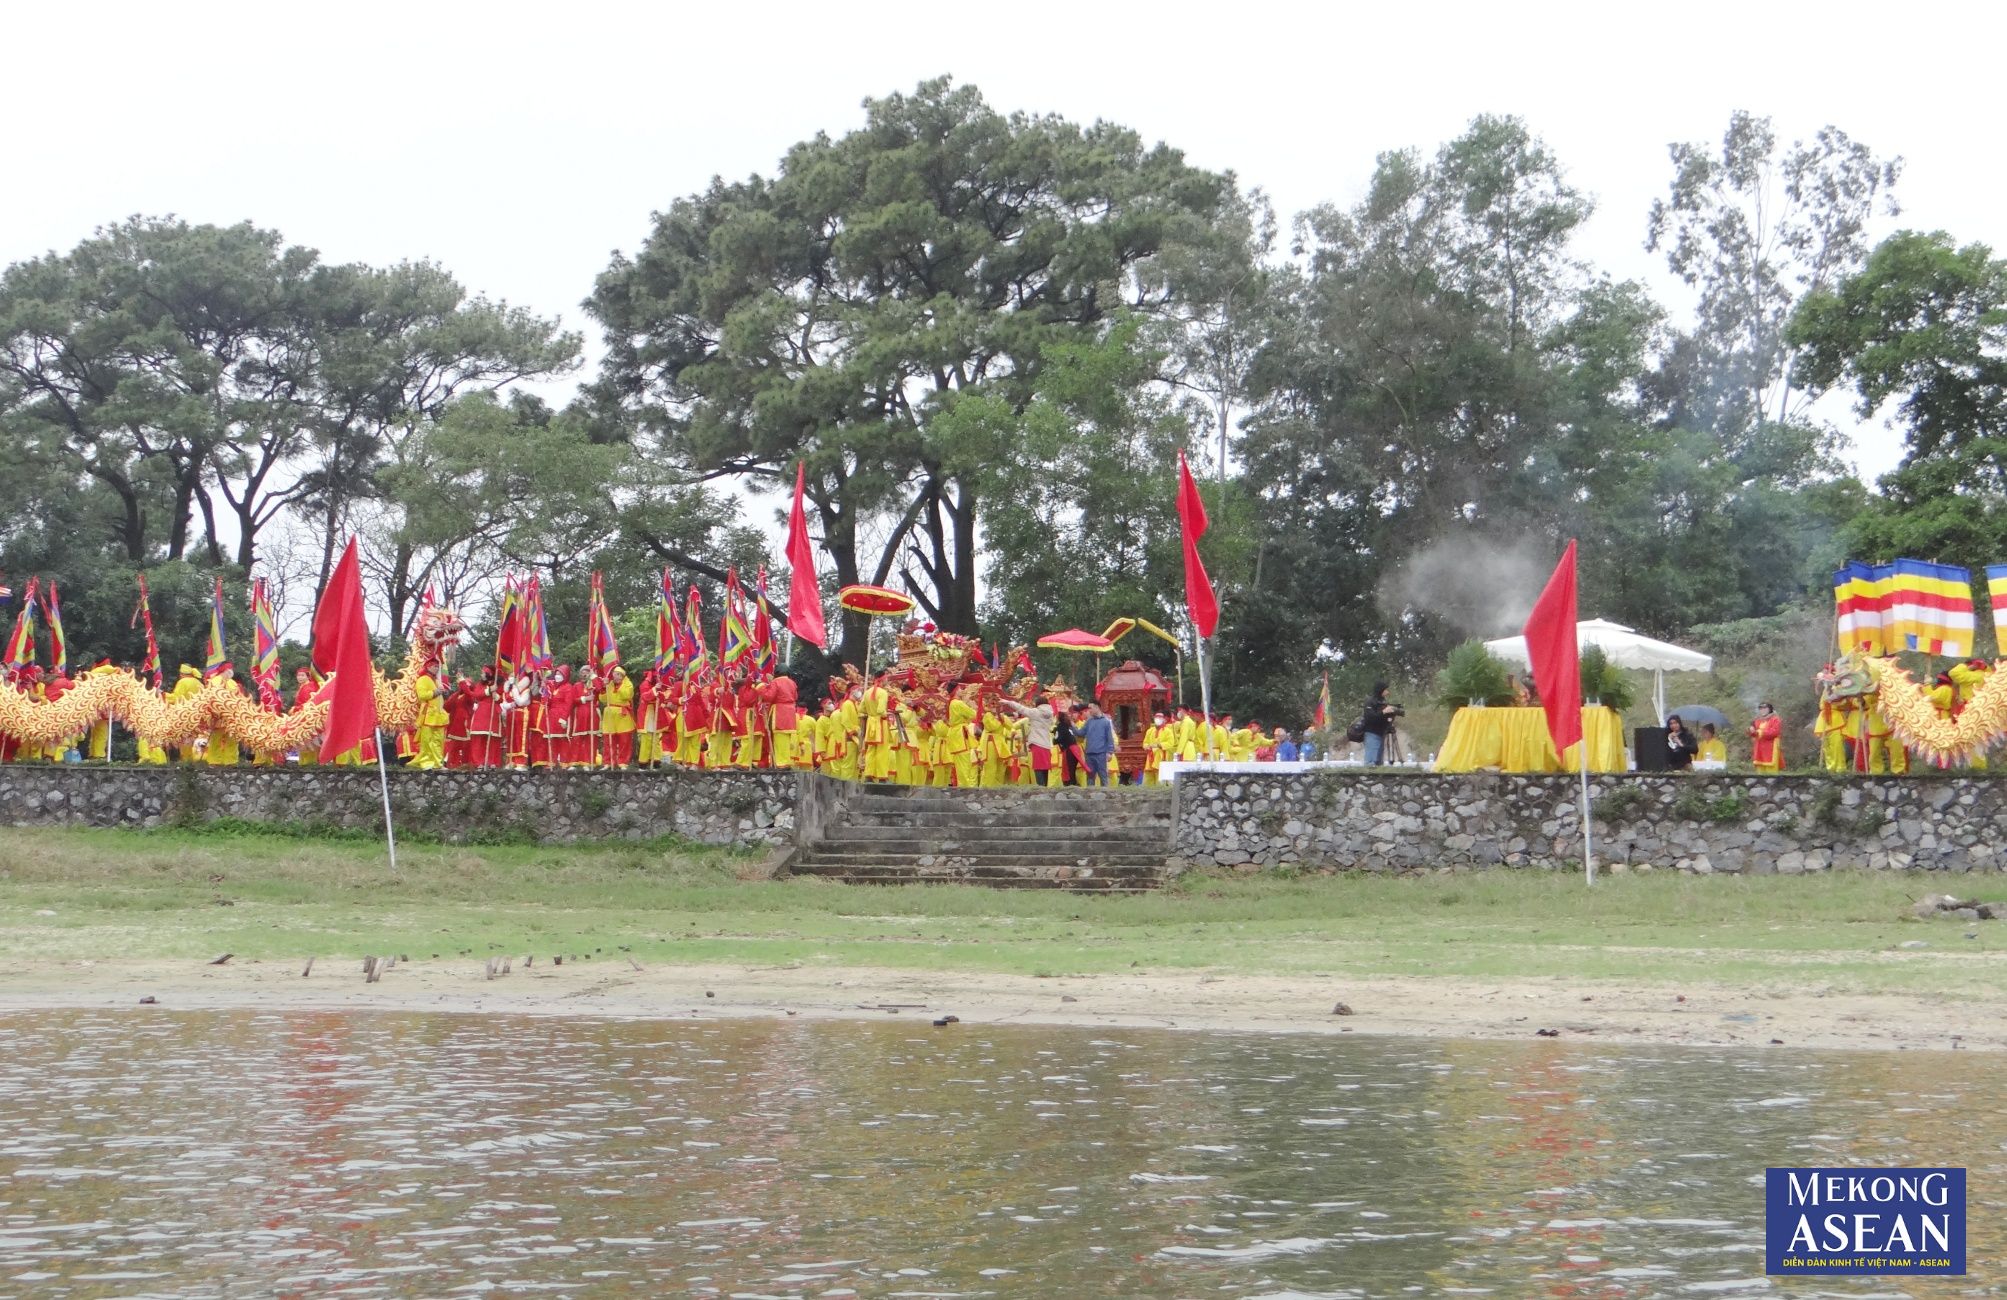 Hơn 2000 người tham gia lễ rước nước chùa Côn Sơn ở Hải Dương